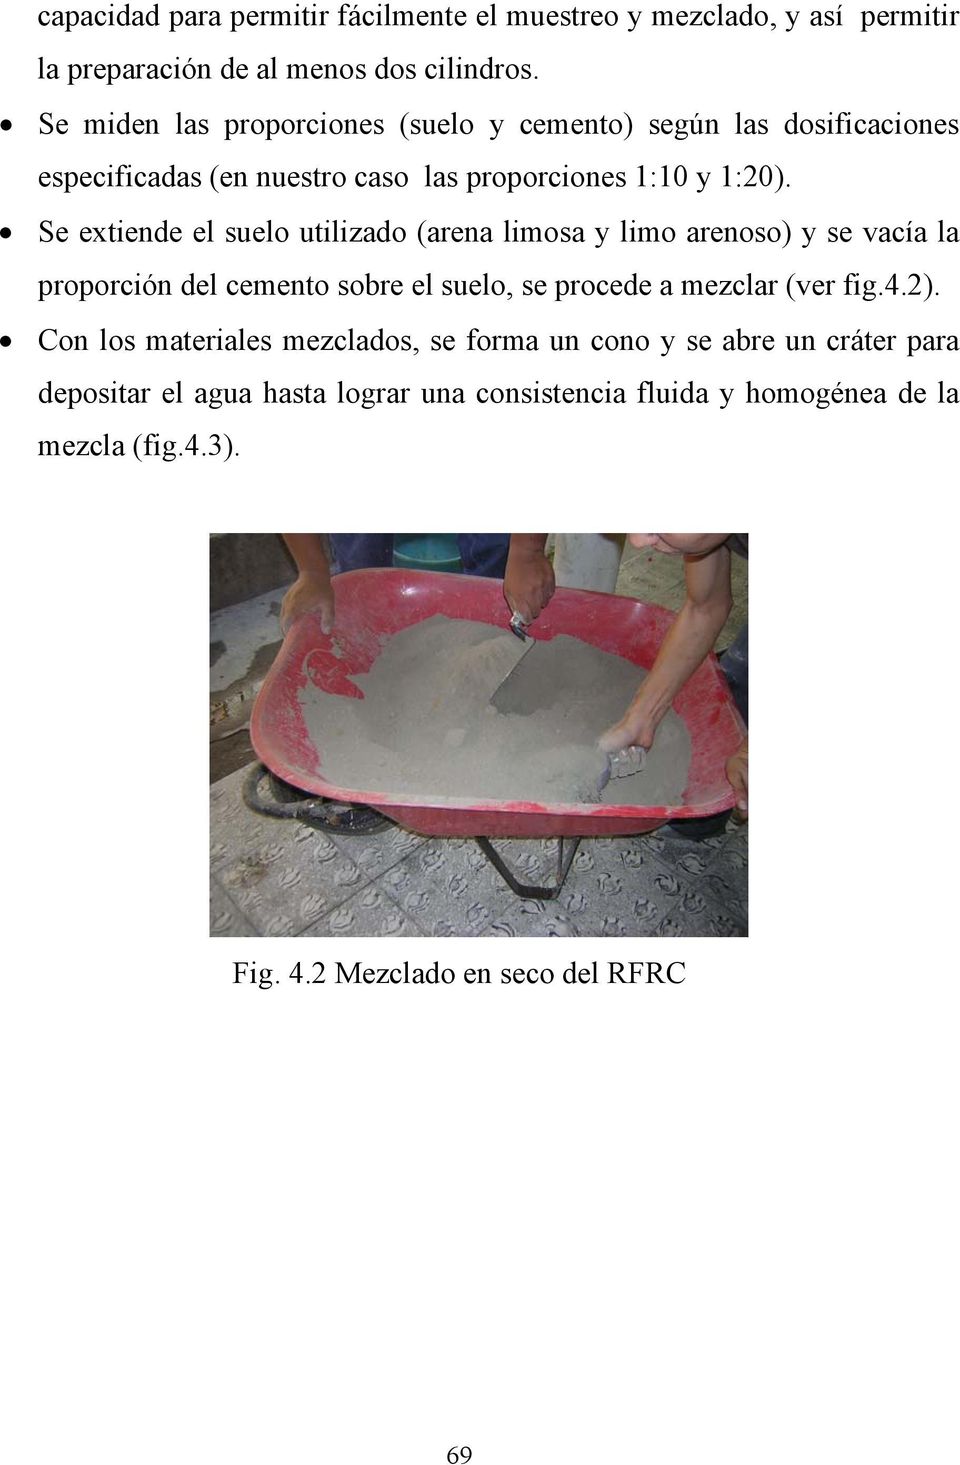 Se extiende el suelo utilizado (arena limosa y limo arenoso) y se vacía la proporción del cemento sobre el suelo, se procede a mezclar (ver fig.4.2).